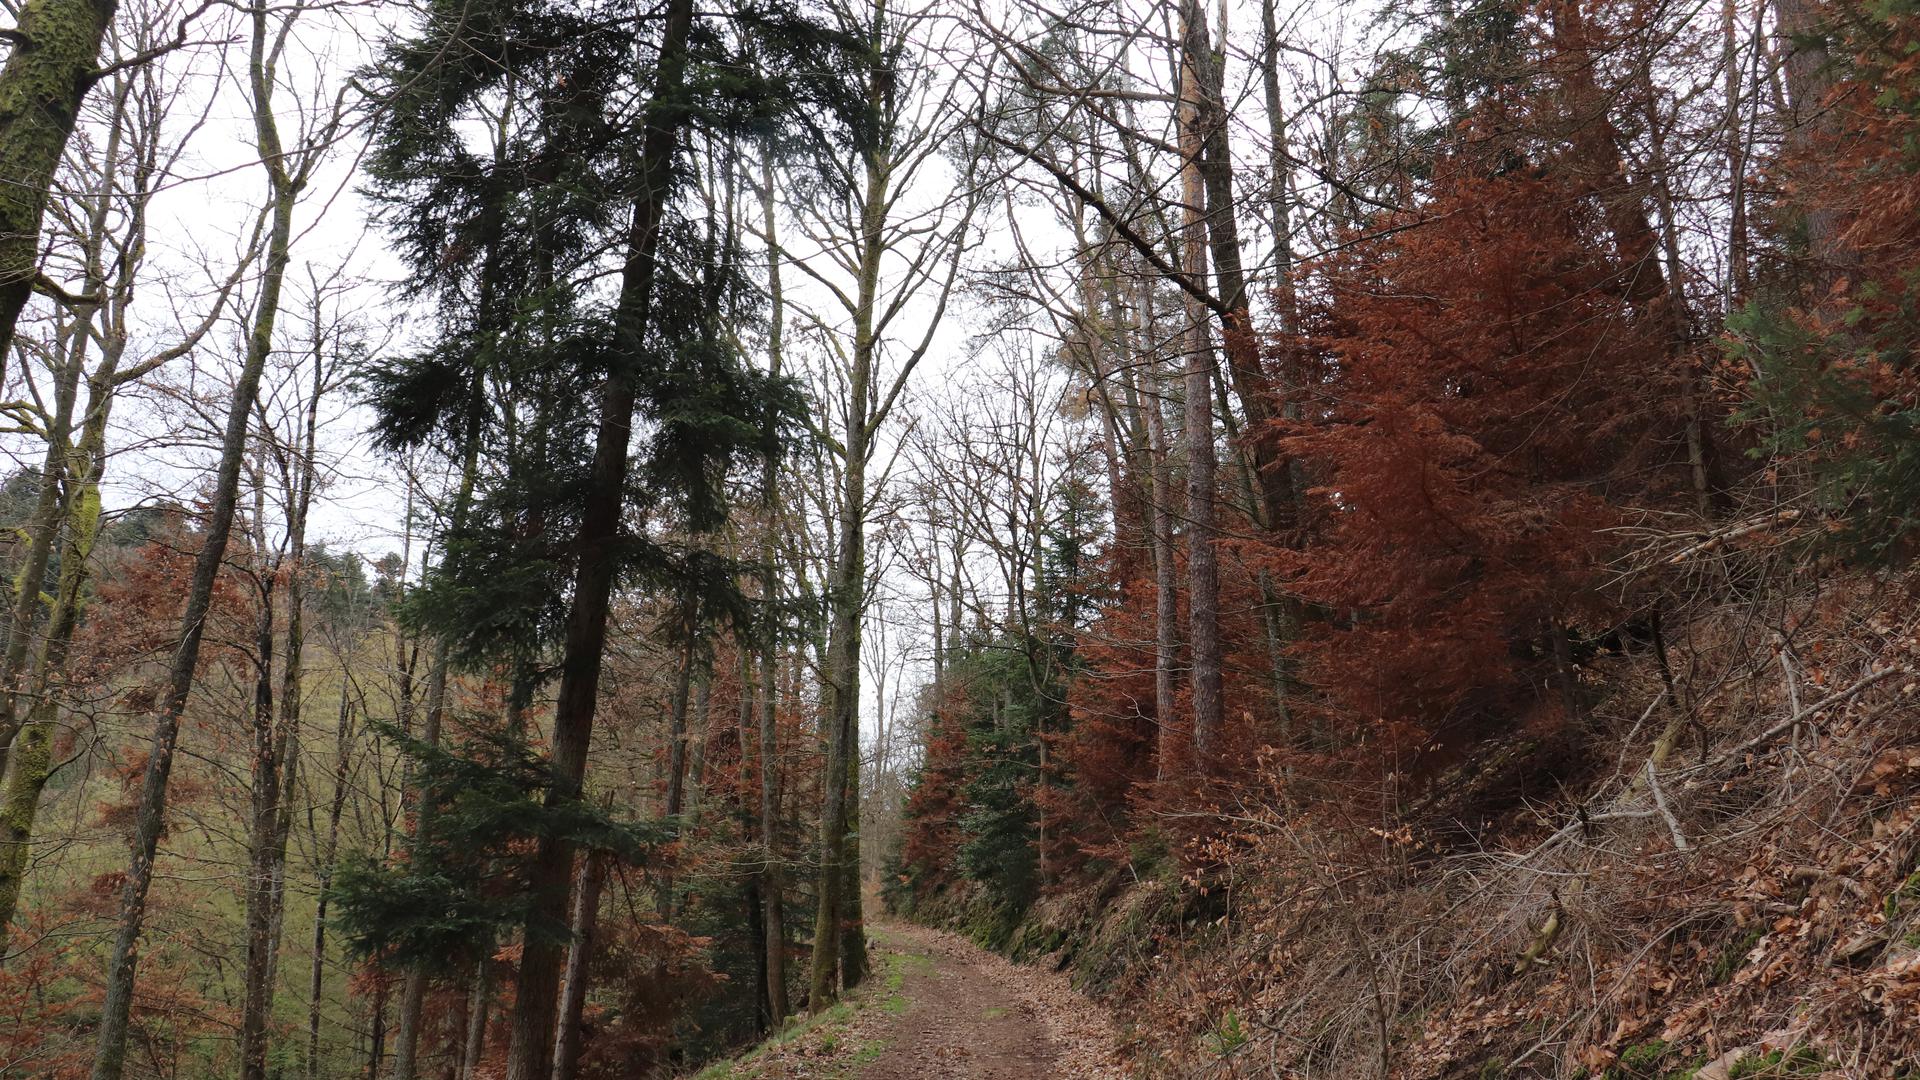 Trauriger Anblick: Zahlreiche Nadelbäume im Baden-Badener Stadtwald sind vertrocknet, wie sich hier am Cäcilienberg oberhalb von Lichtental zeigt.